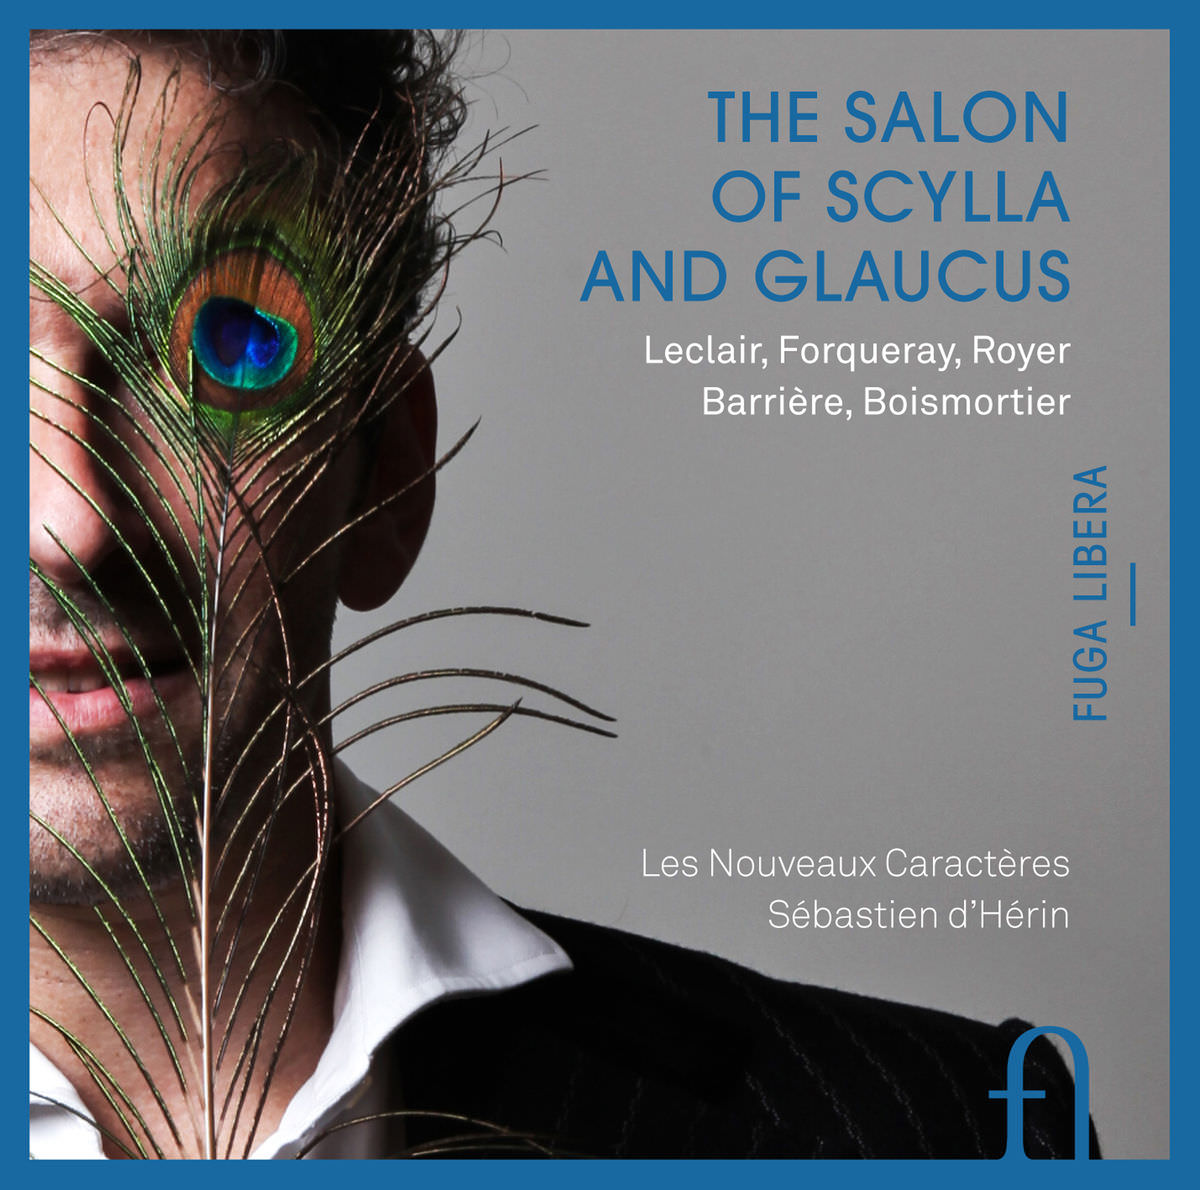 Les Nouveaux Caracteres, Sebastien d’Herin - The Salon of Scylla and Glaucus (2015) [FLAC 24bit/96kHz]